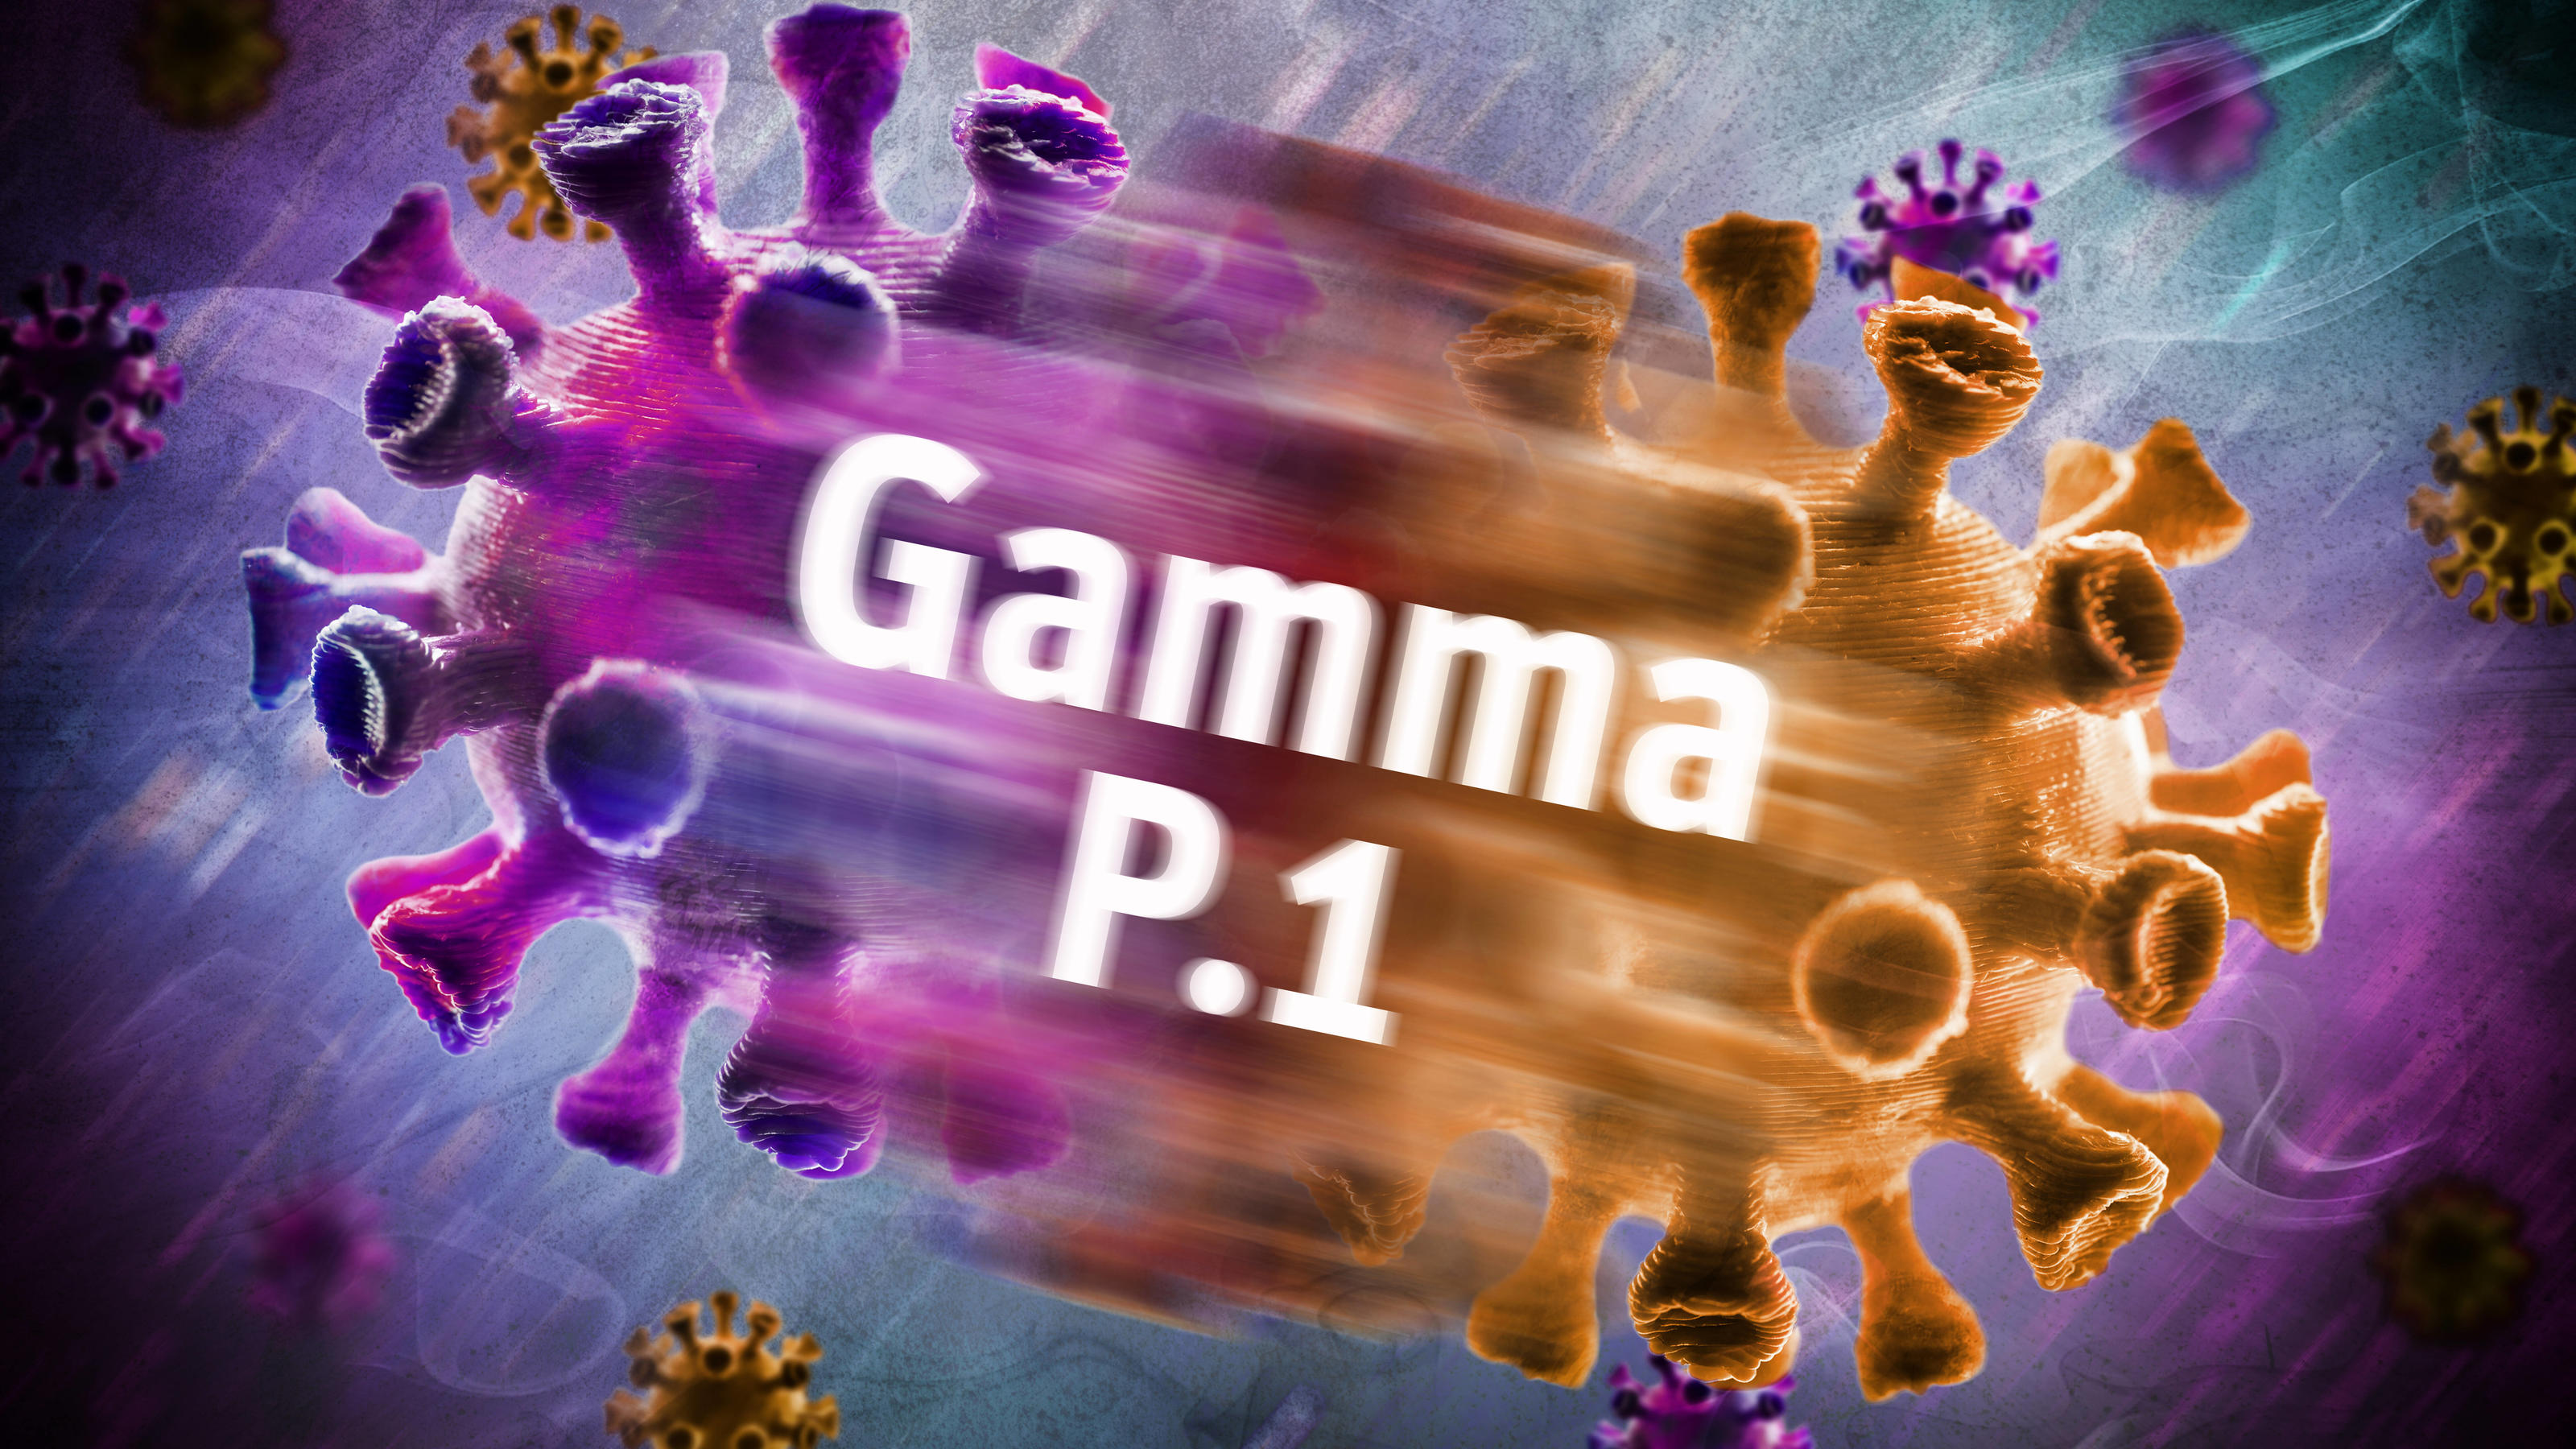 Symbolfoto von mutiertem Coronavirus der Gamma-Variante P.1.